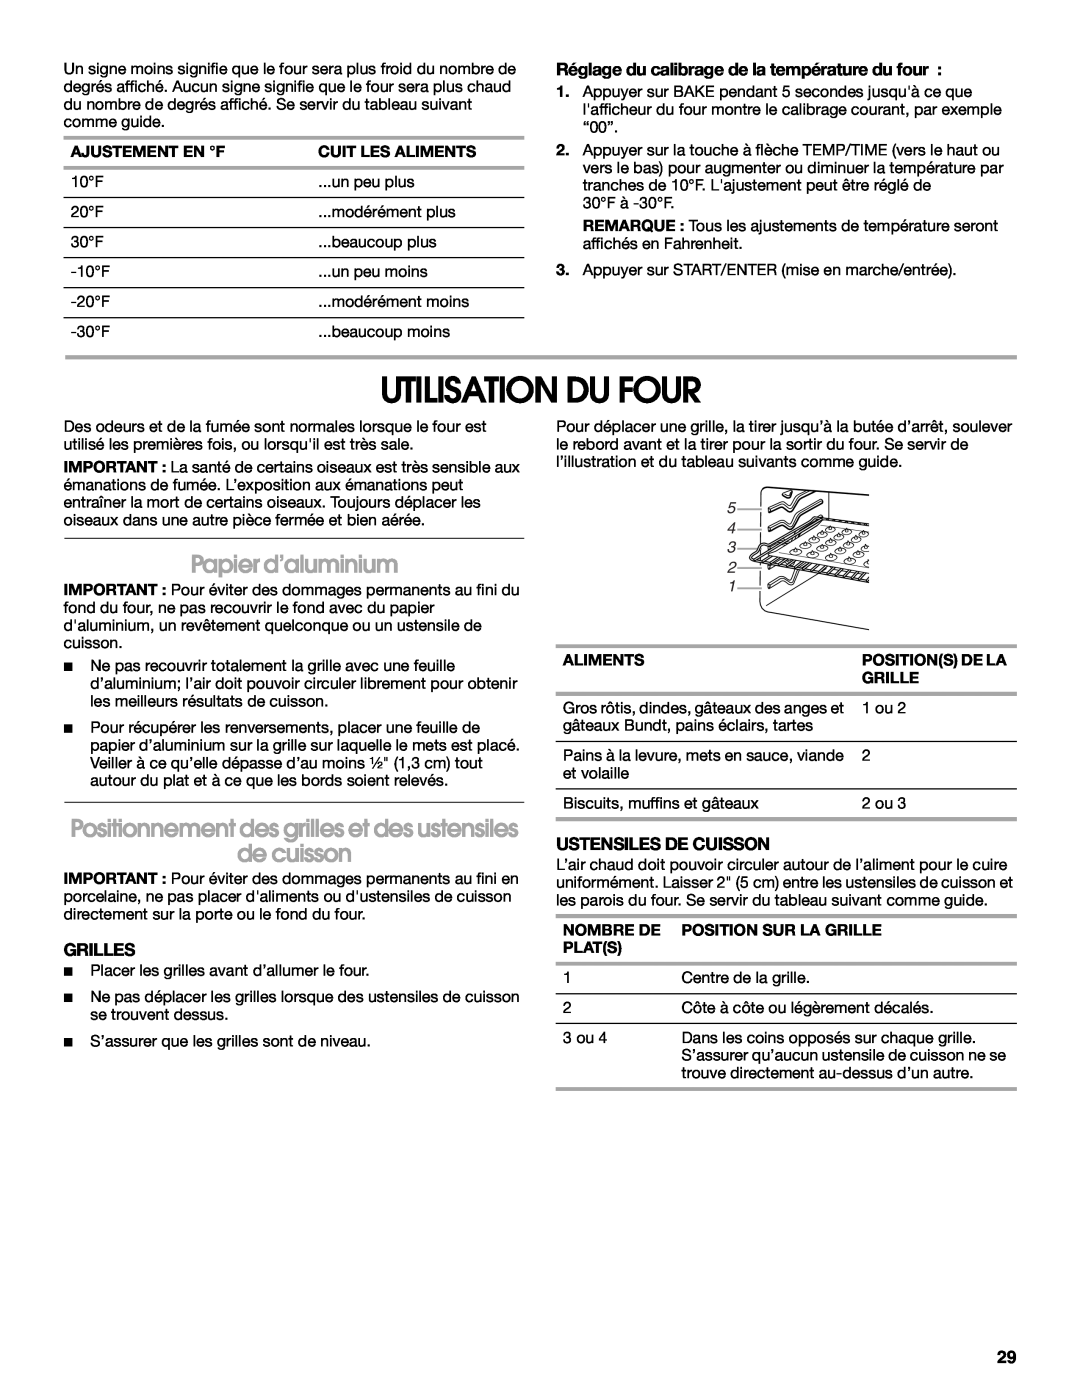 Whirlpool W10017750B2 Utilisation Du Four, Papier d’aluminium, de cuisson, Réglage du calibrage de la température du four 